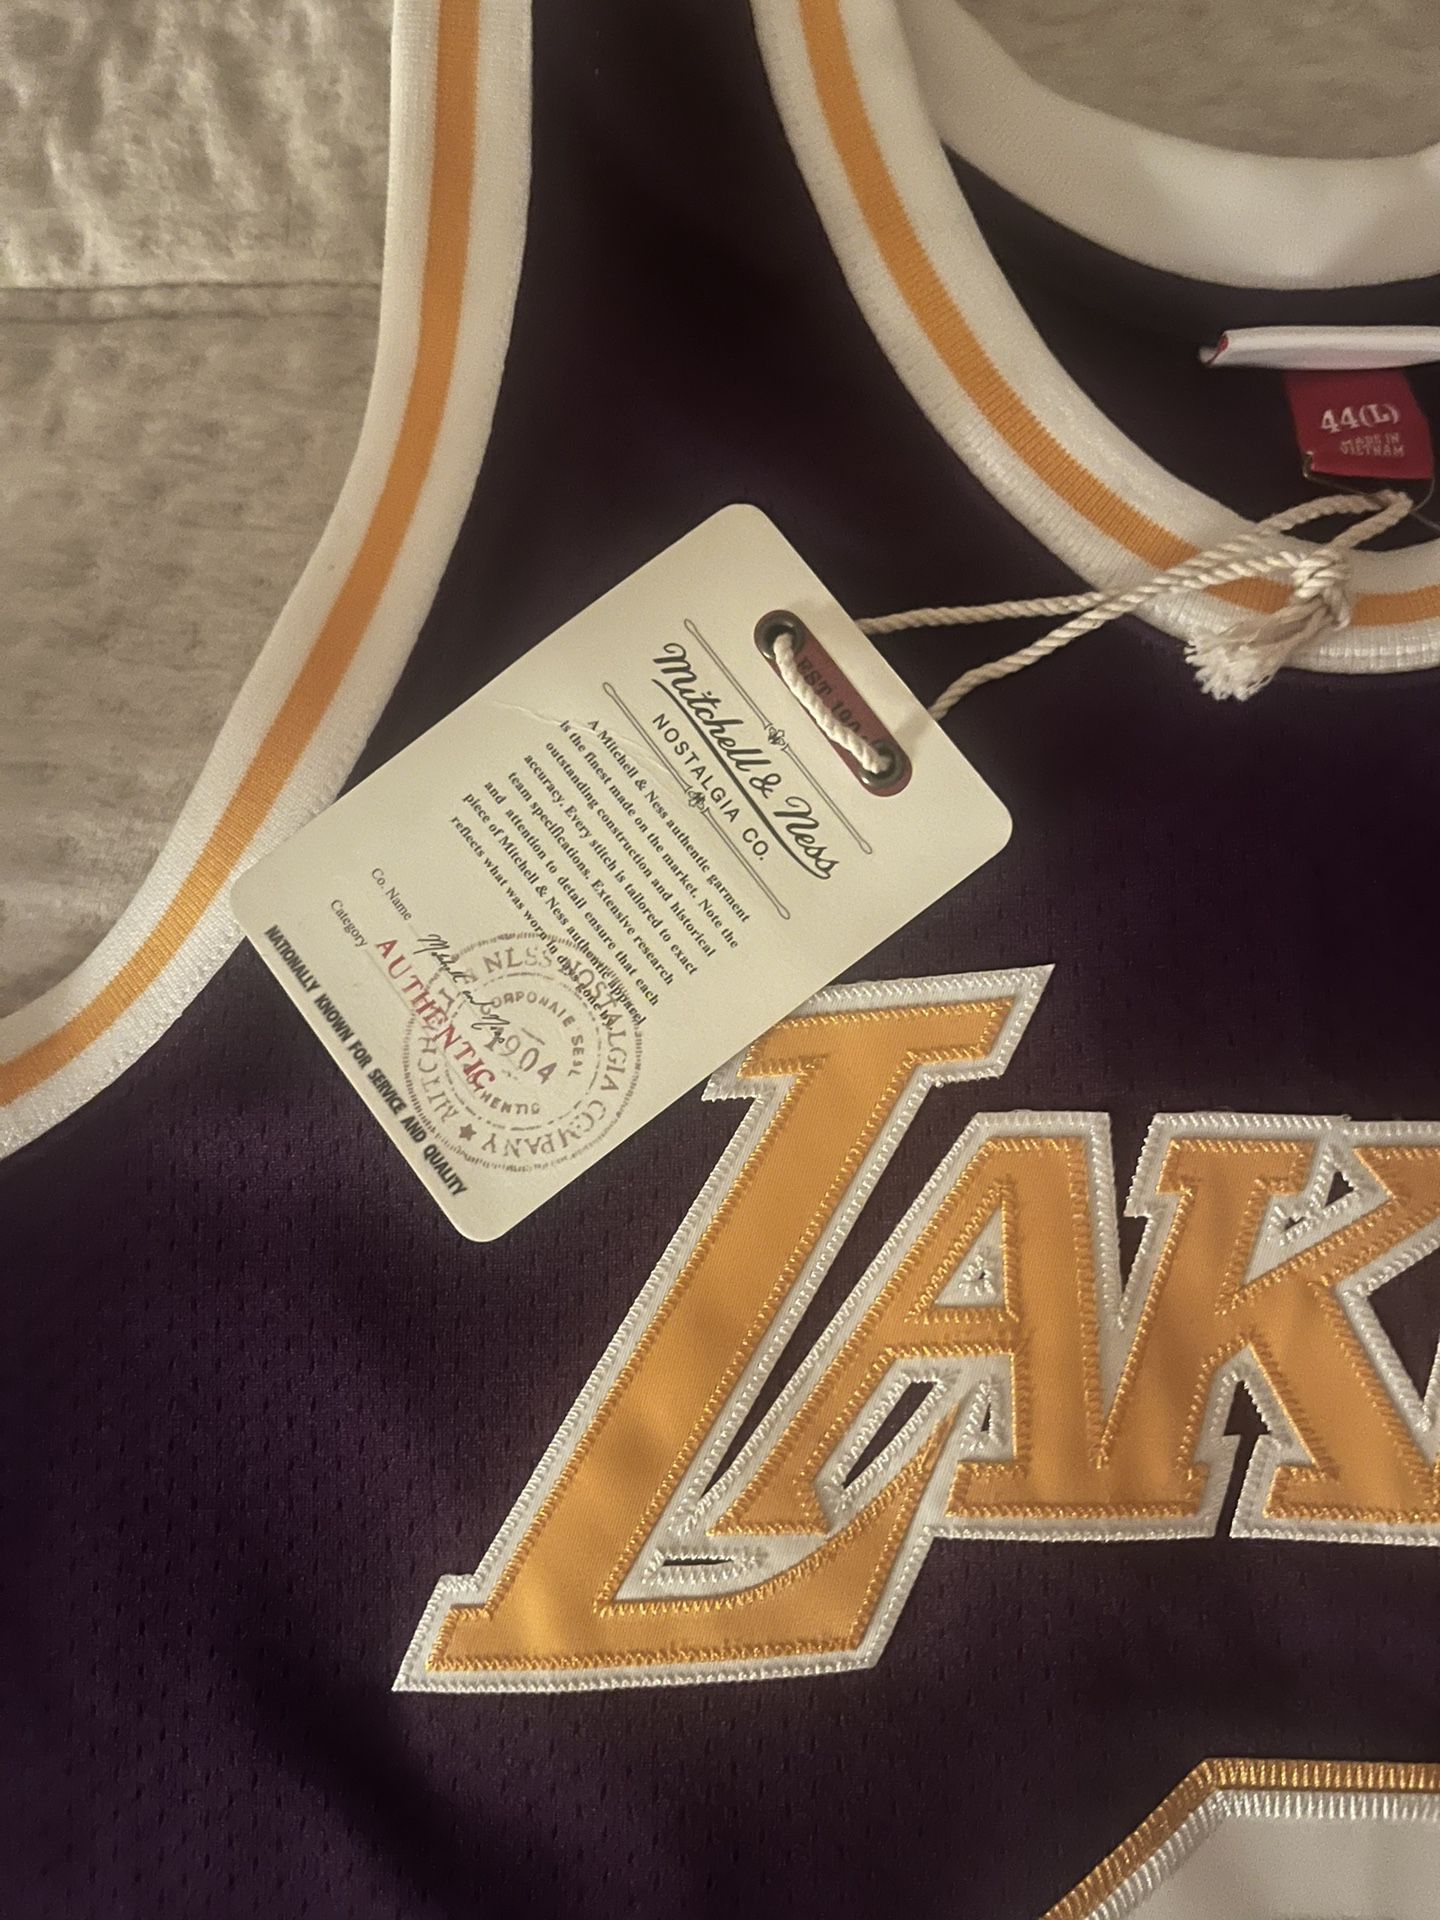 Kobe Bryant Los Angeles Lakers Purple 1996-1997 Jersey – Best Sports Jerseys